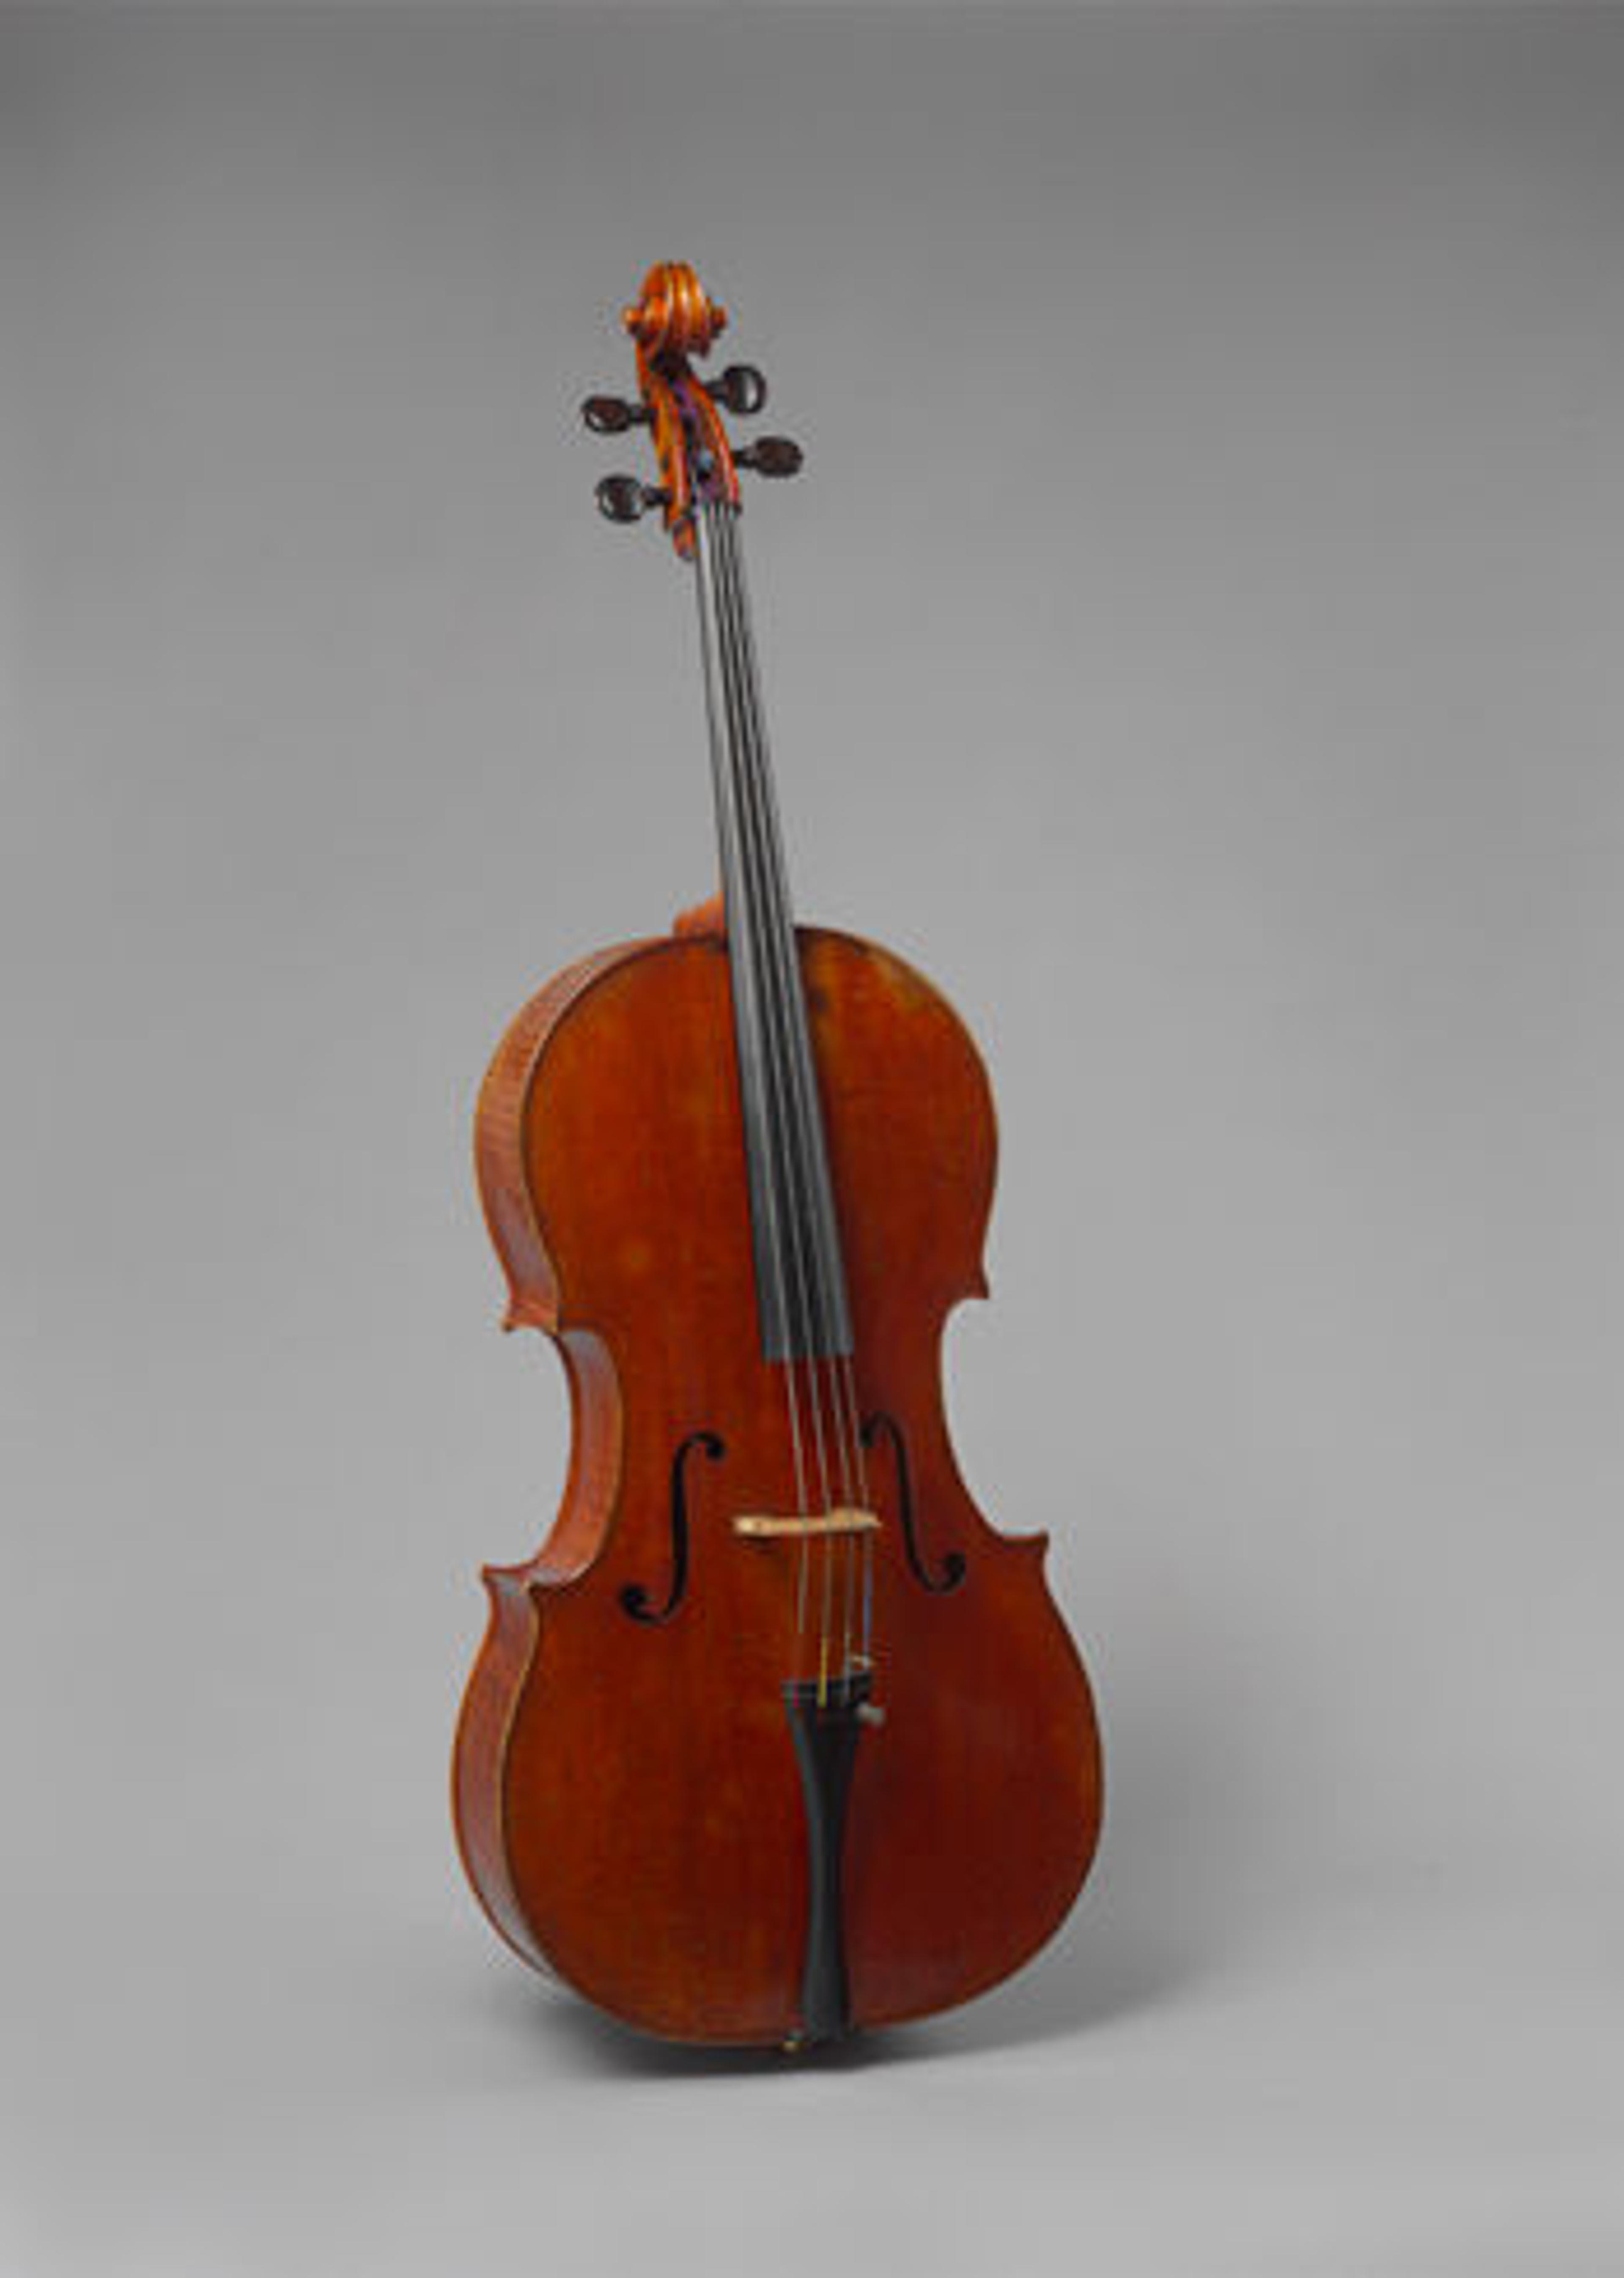 Antonio Stradivari (Italian, 1644–1737) | The Batta-Piatigorsky Violoncello, 1714 | L.2013.71a–g